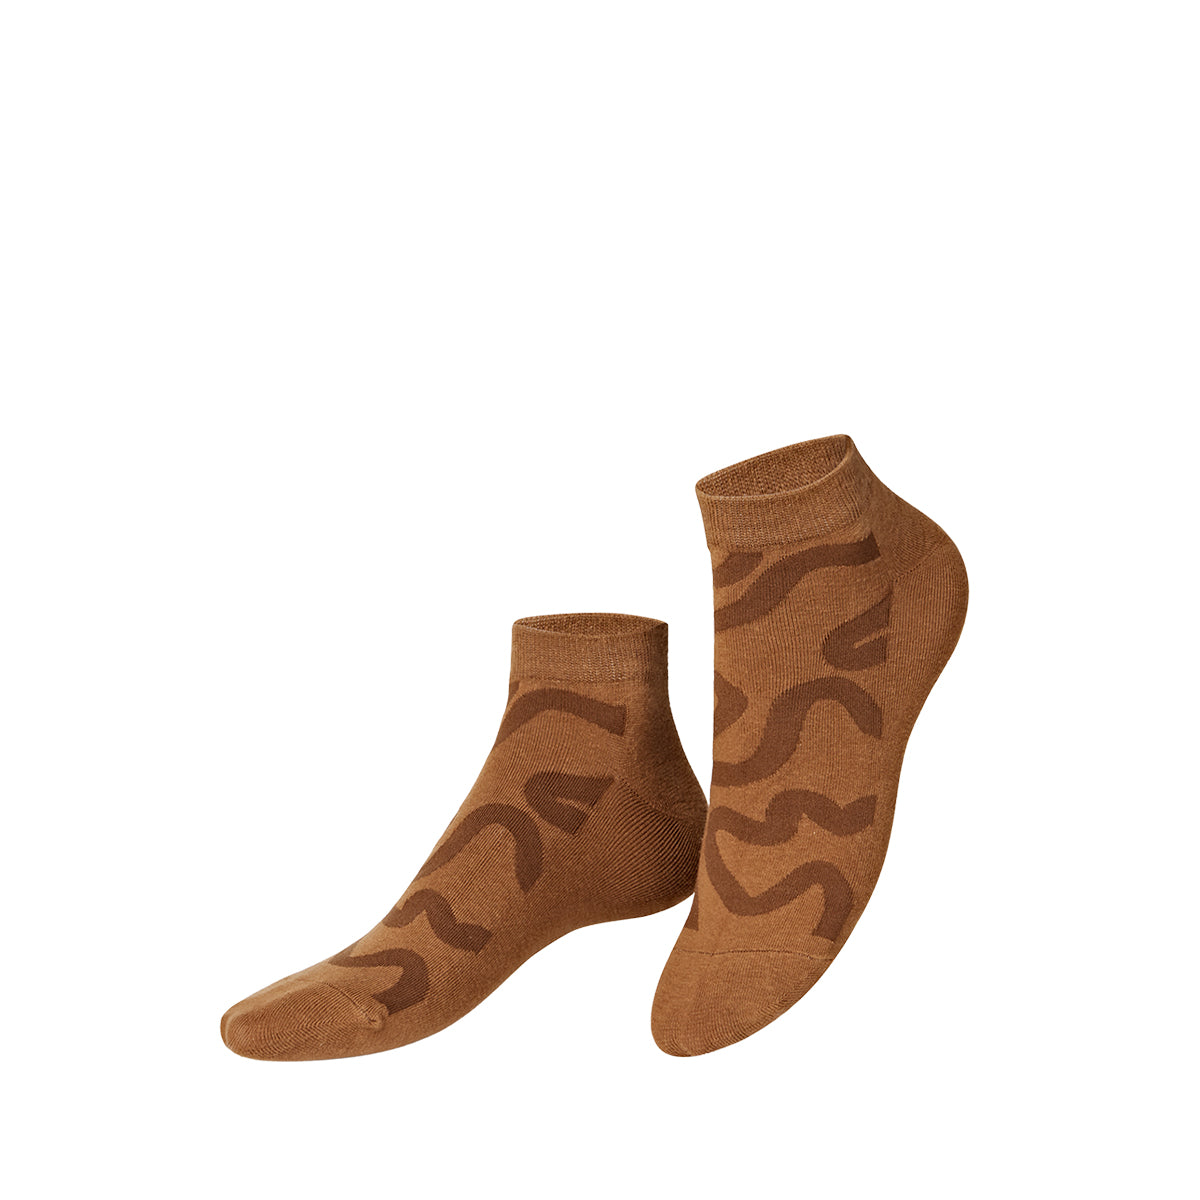 Socks Smoothie Chocolate (2 pairs)